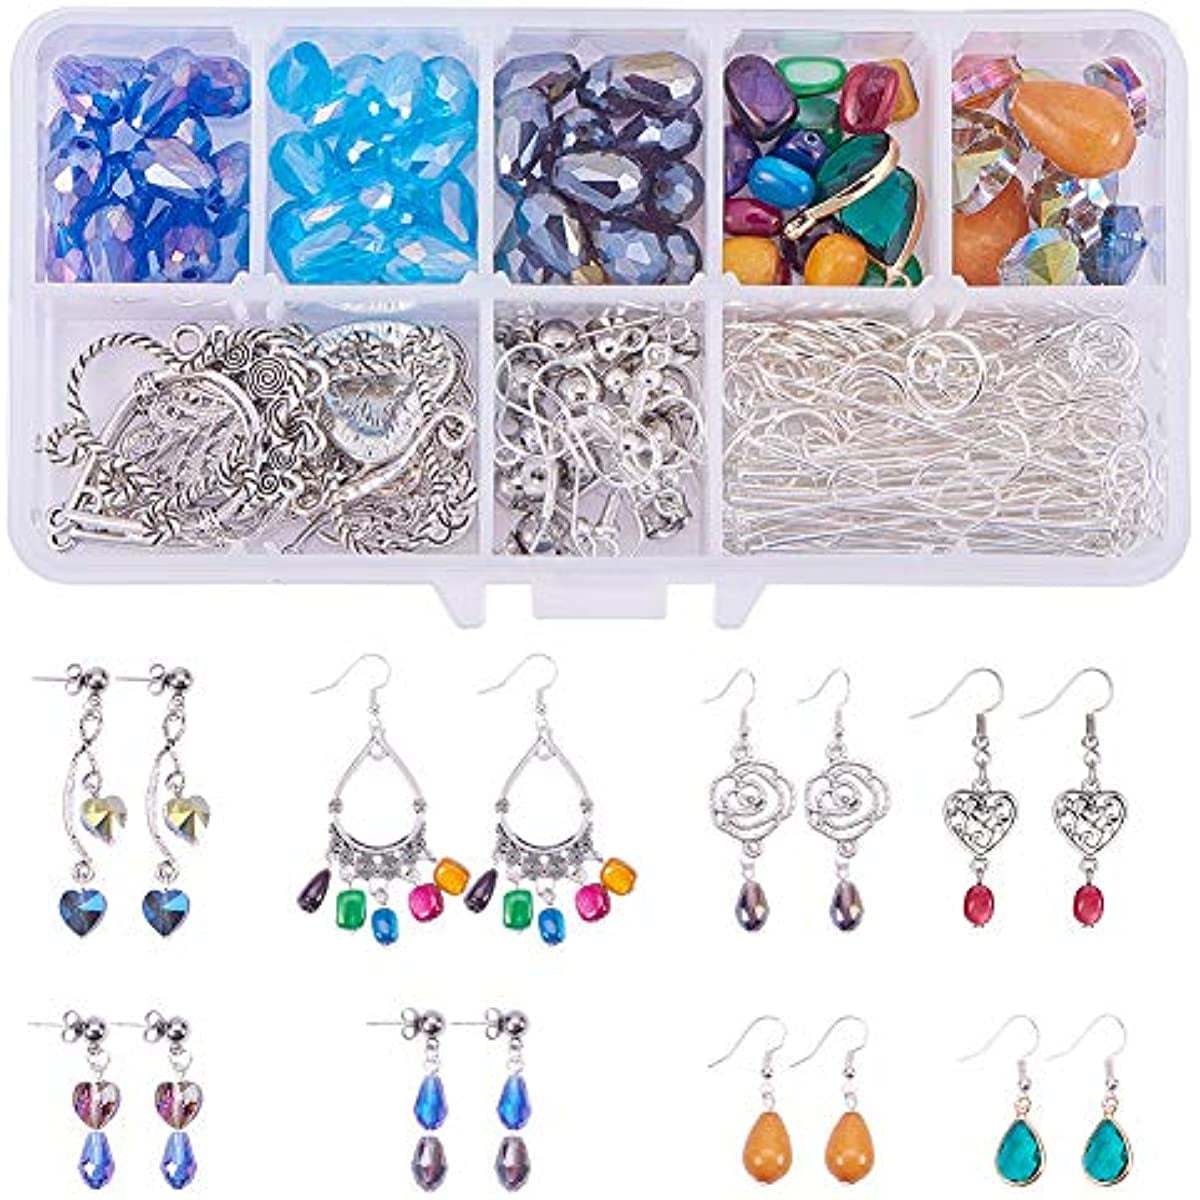 Eclectic Fringe Earrings Chandelier DIY Jewelry Making Mini Kit